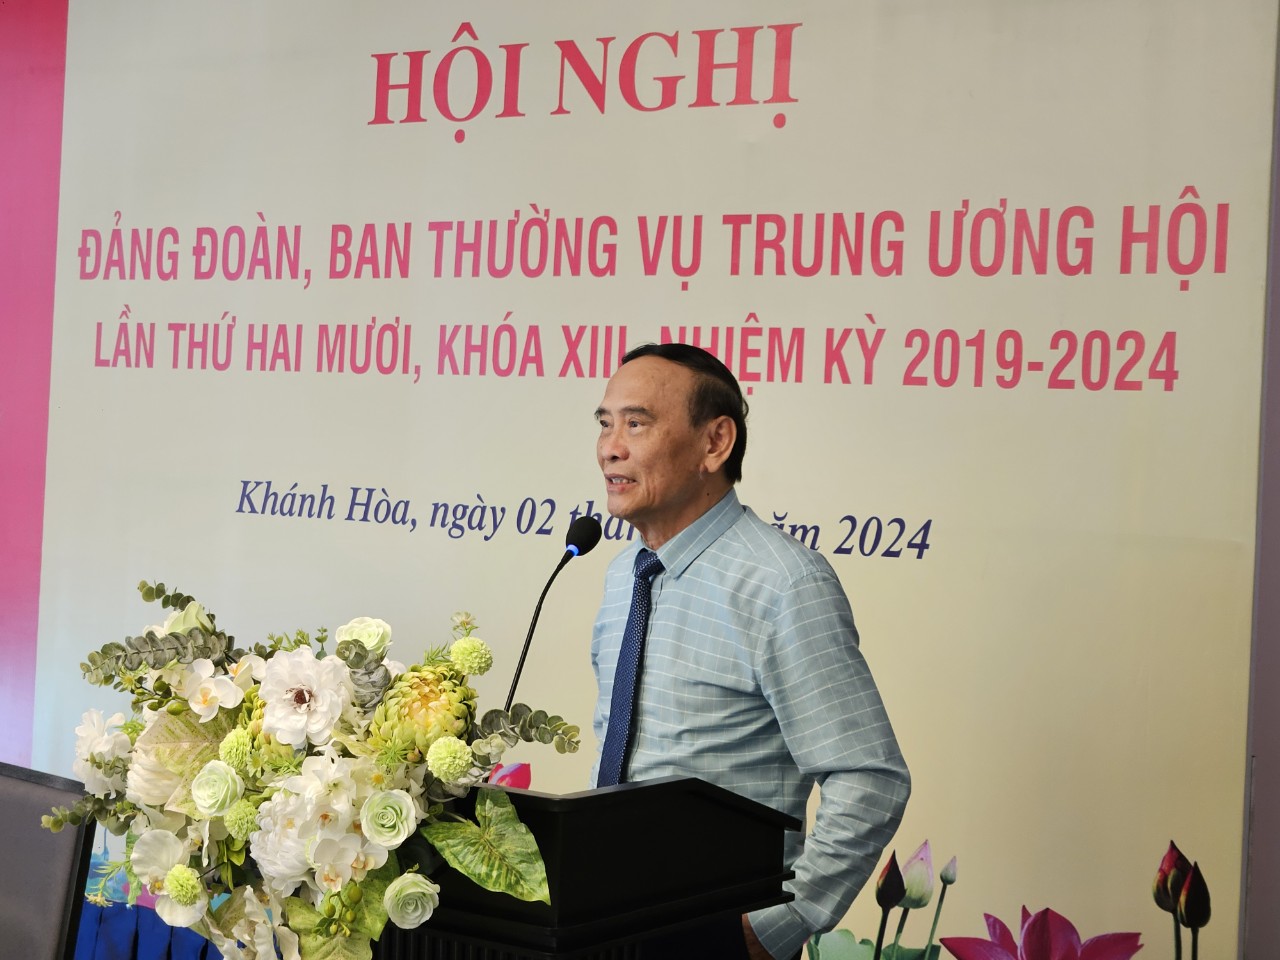 Phát triển công tác hội, sẵn sàng Đại hội toàn quốc Hội Luật gia Việt Nam